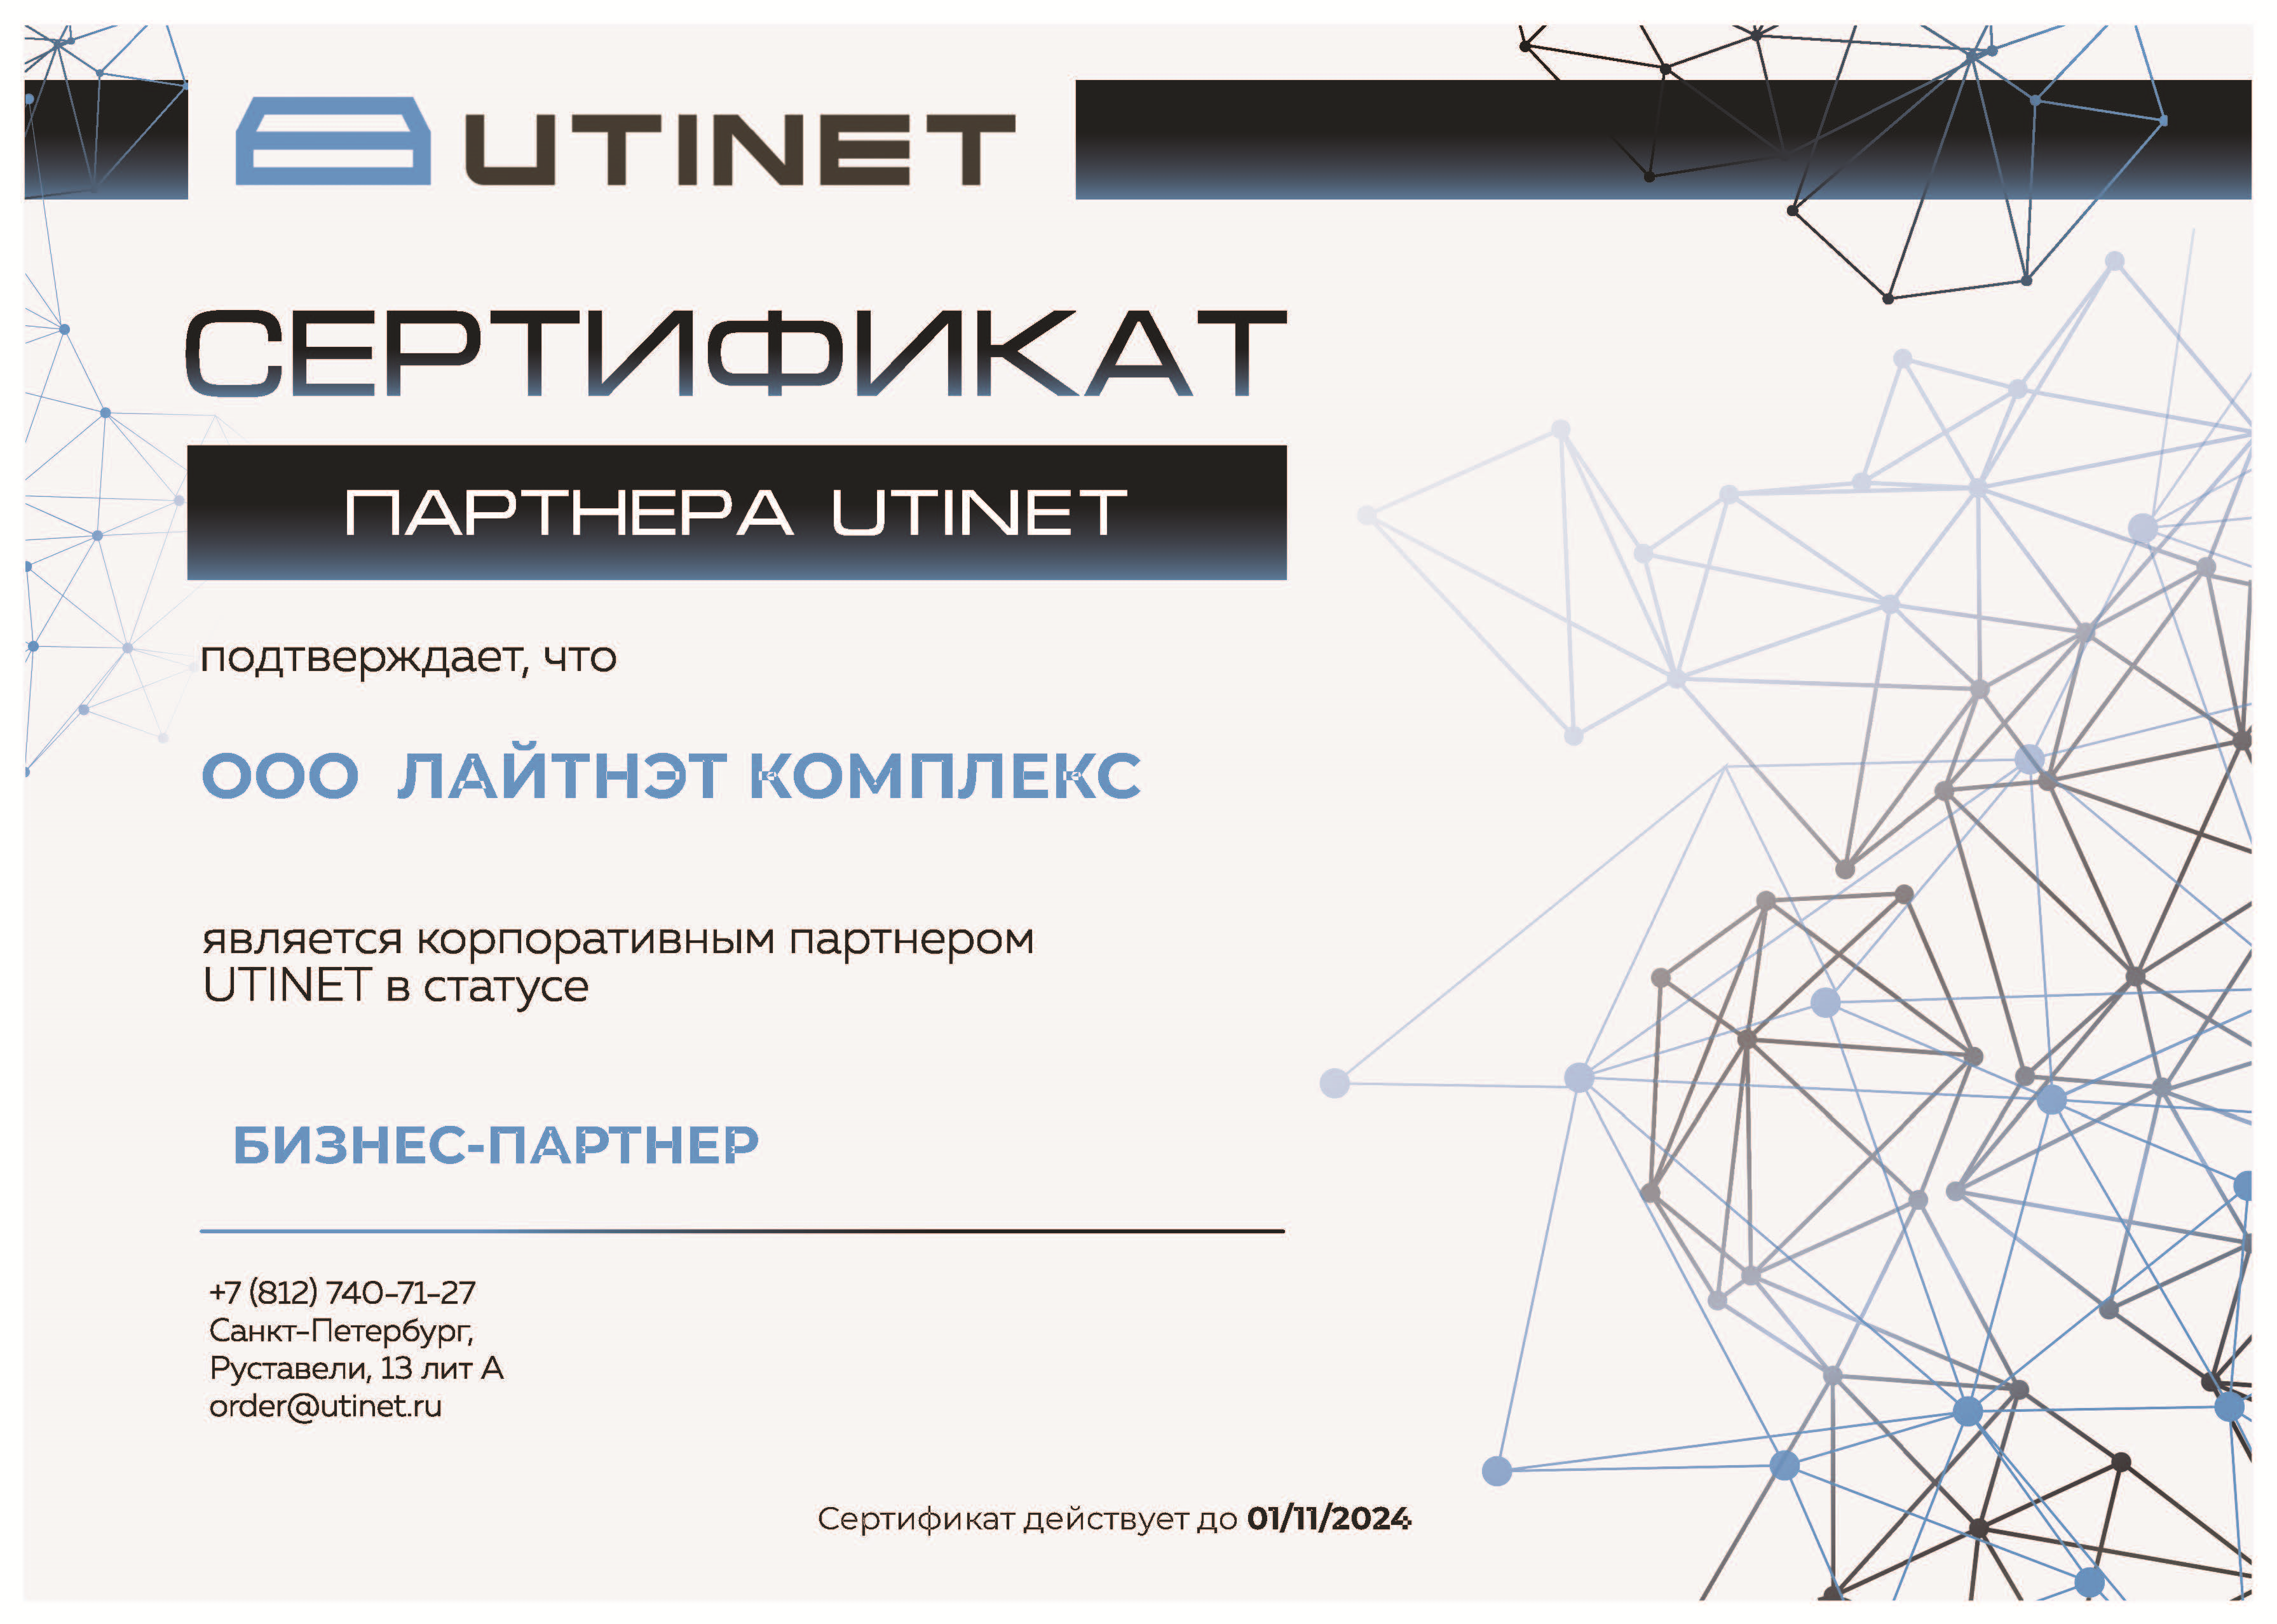 UTINET - бизнес-партнер 2024